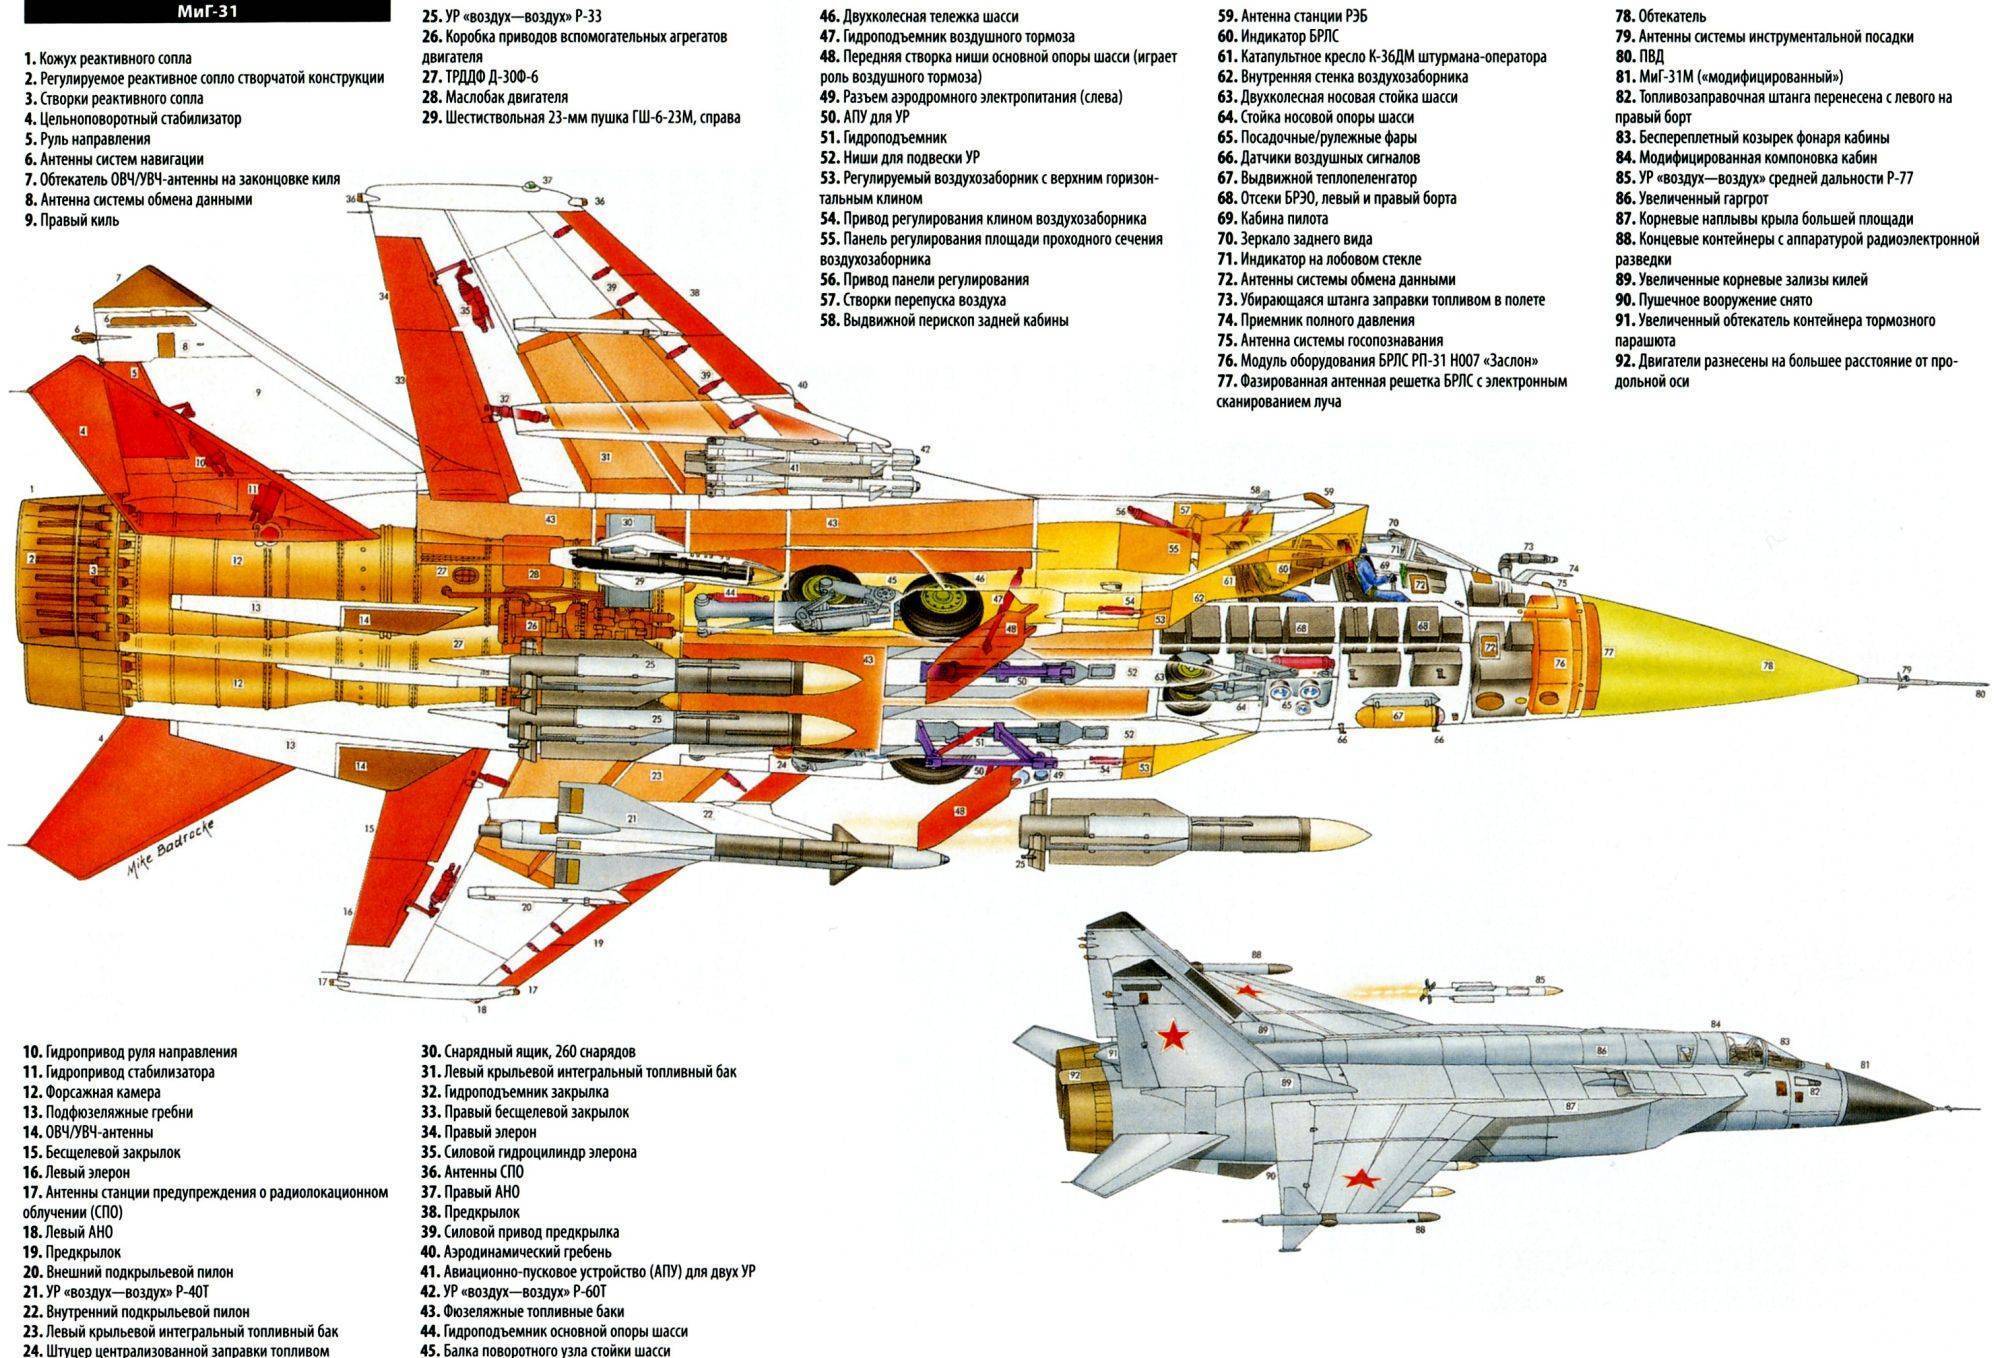 Истребитель су-27: безграничный потенциал